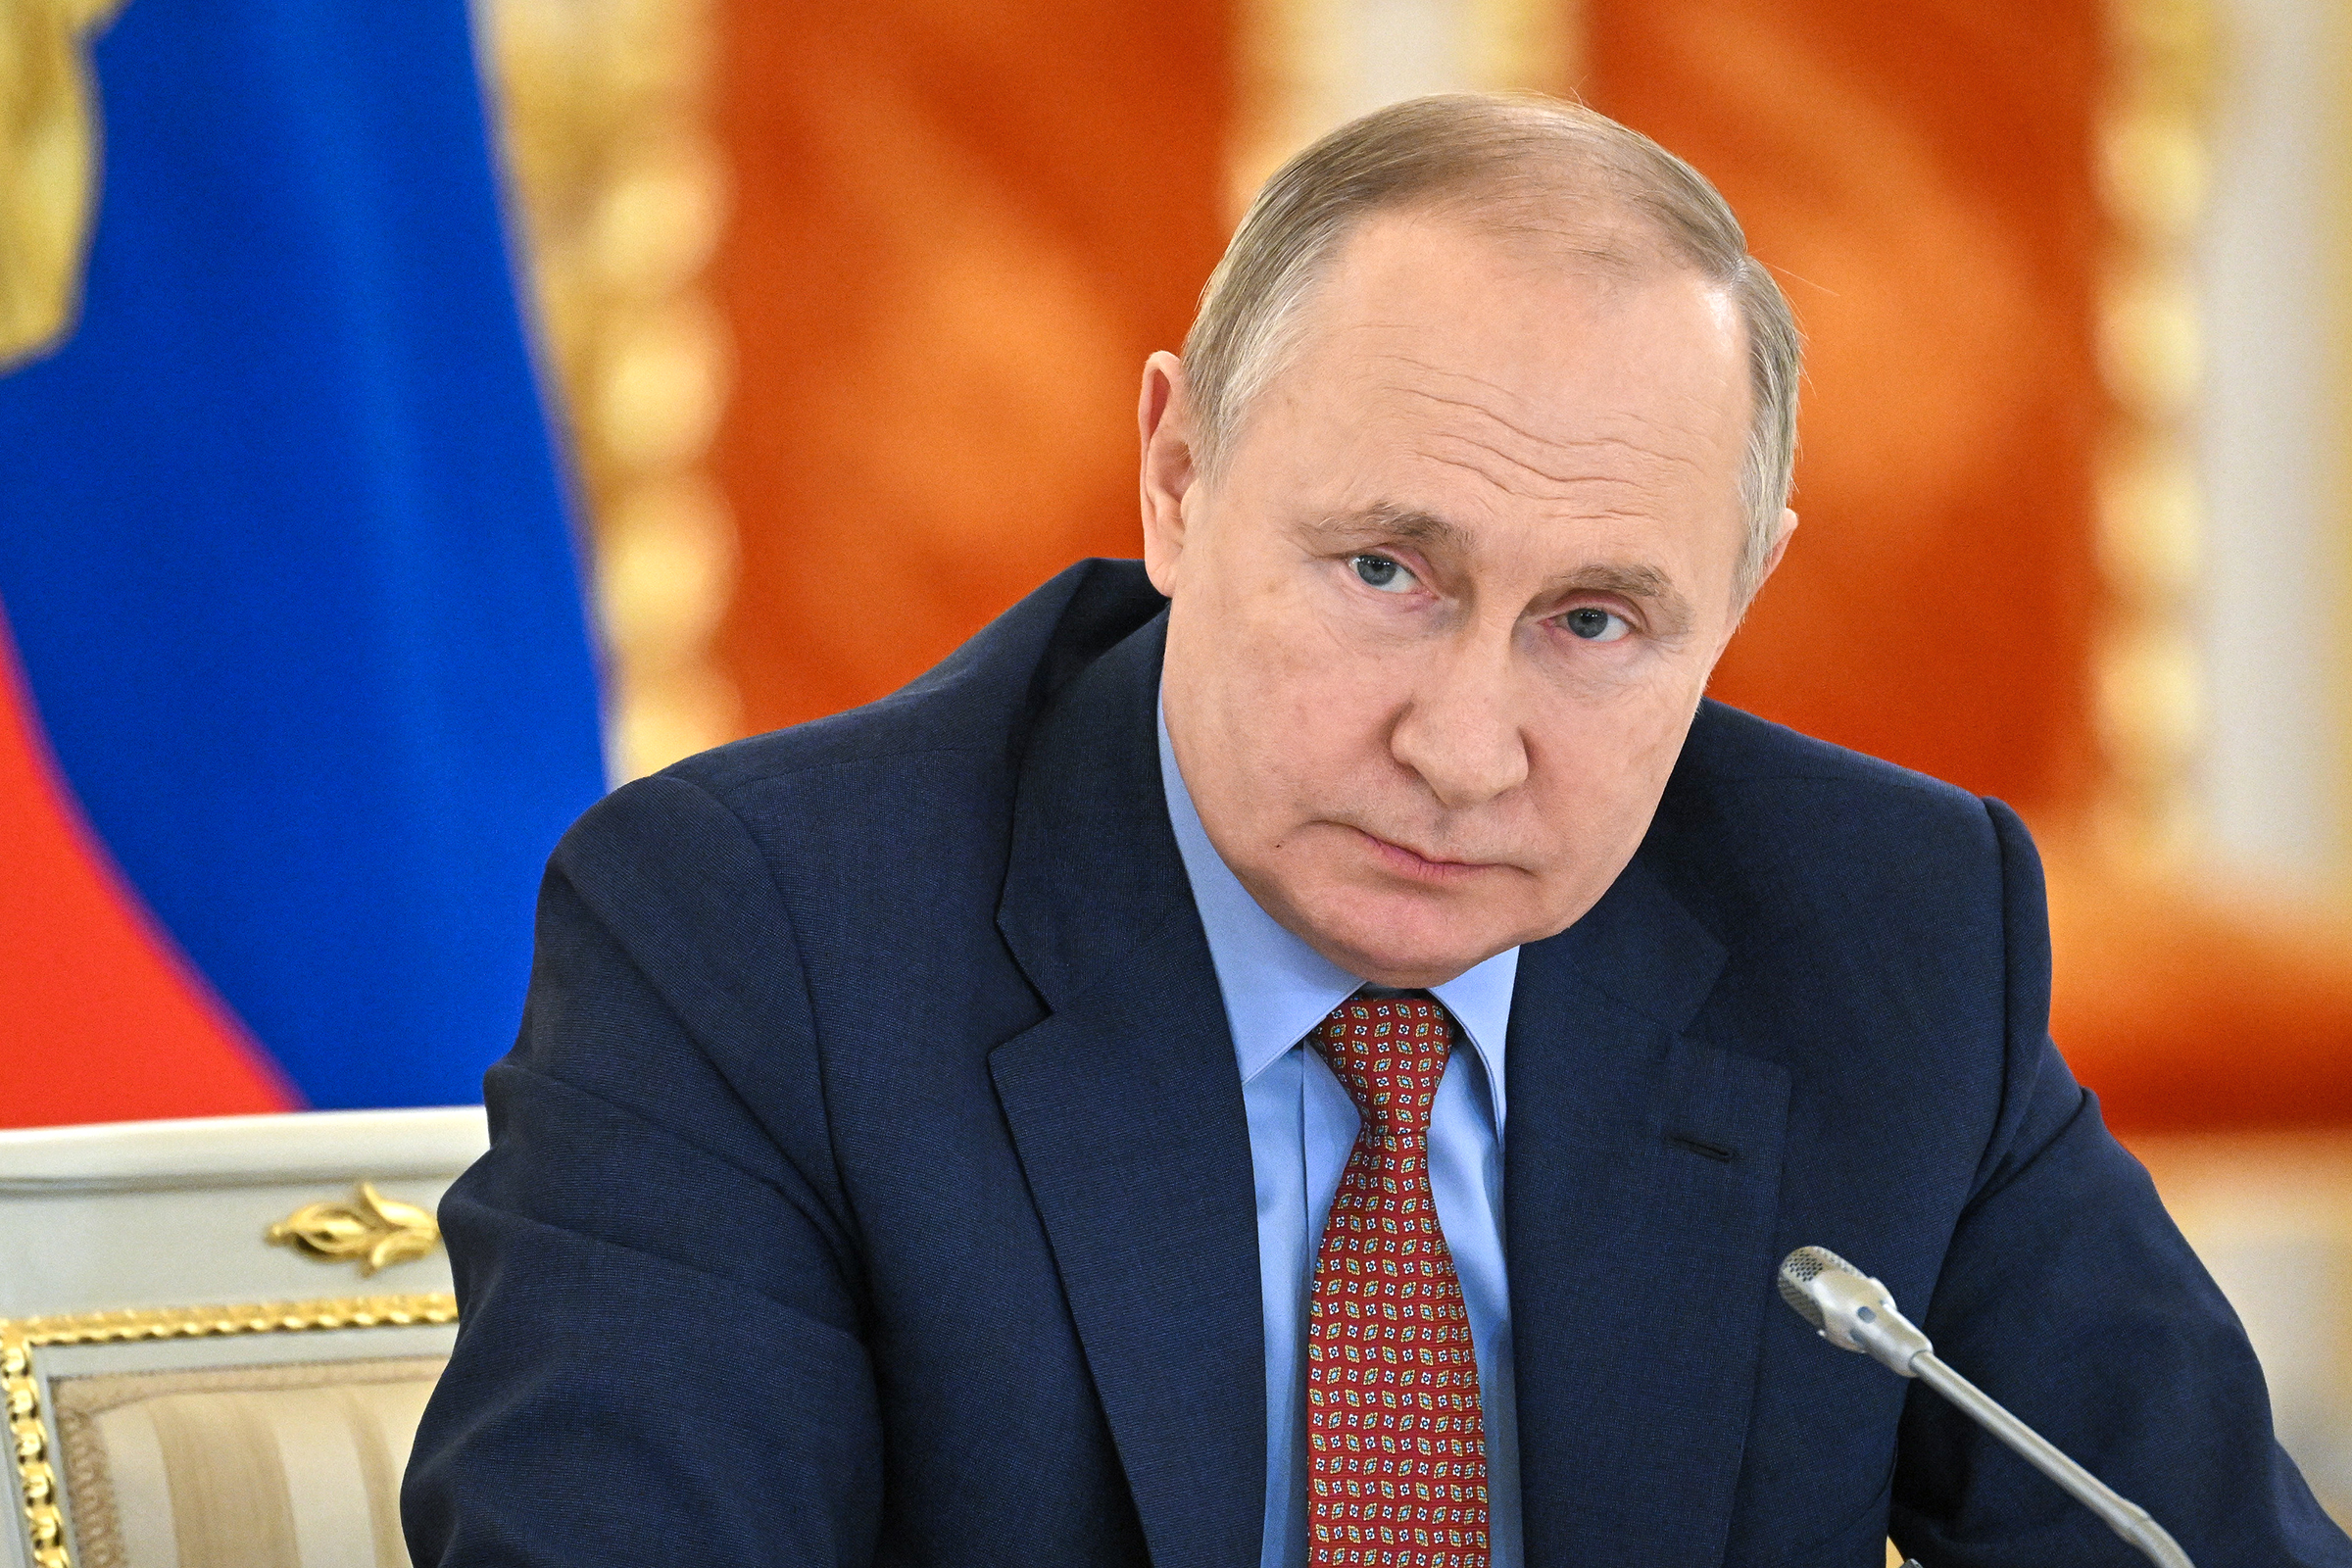 Le porte-parole du Premier ministre affirme que les derniers renseignements britanniques montrent « à certains égards » que le plan de Poutine « a déjà commencé ».